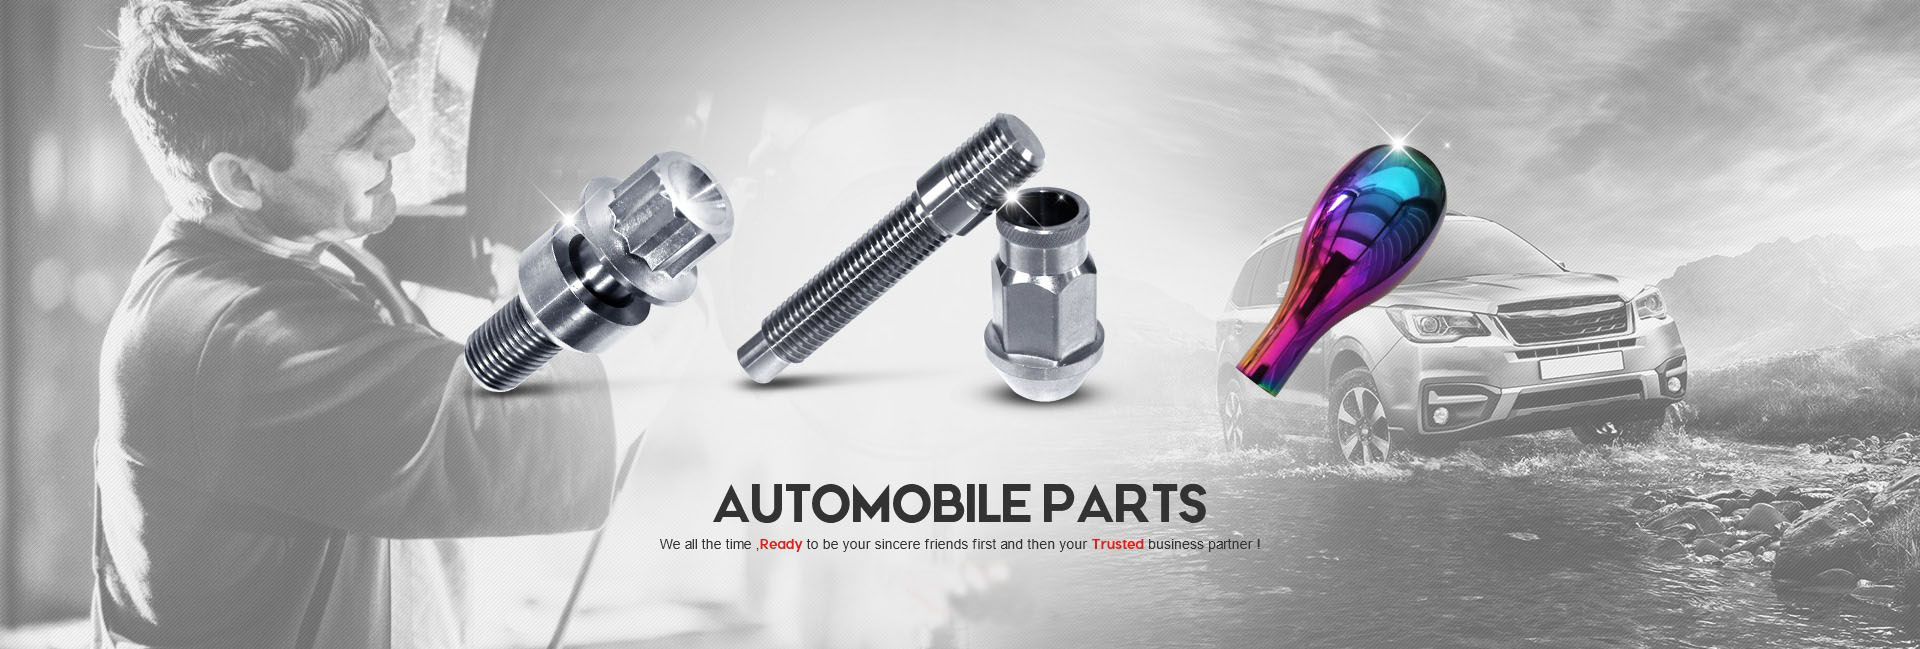 Titanium alloy screws for automobiles